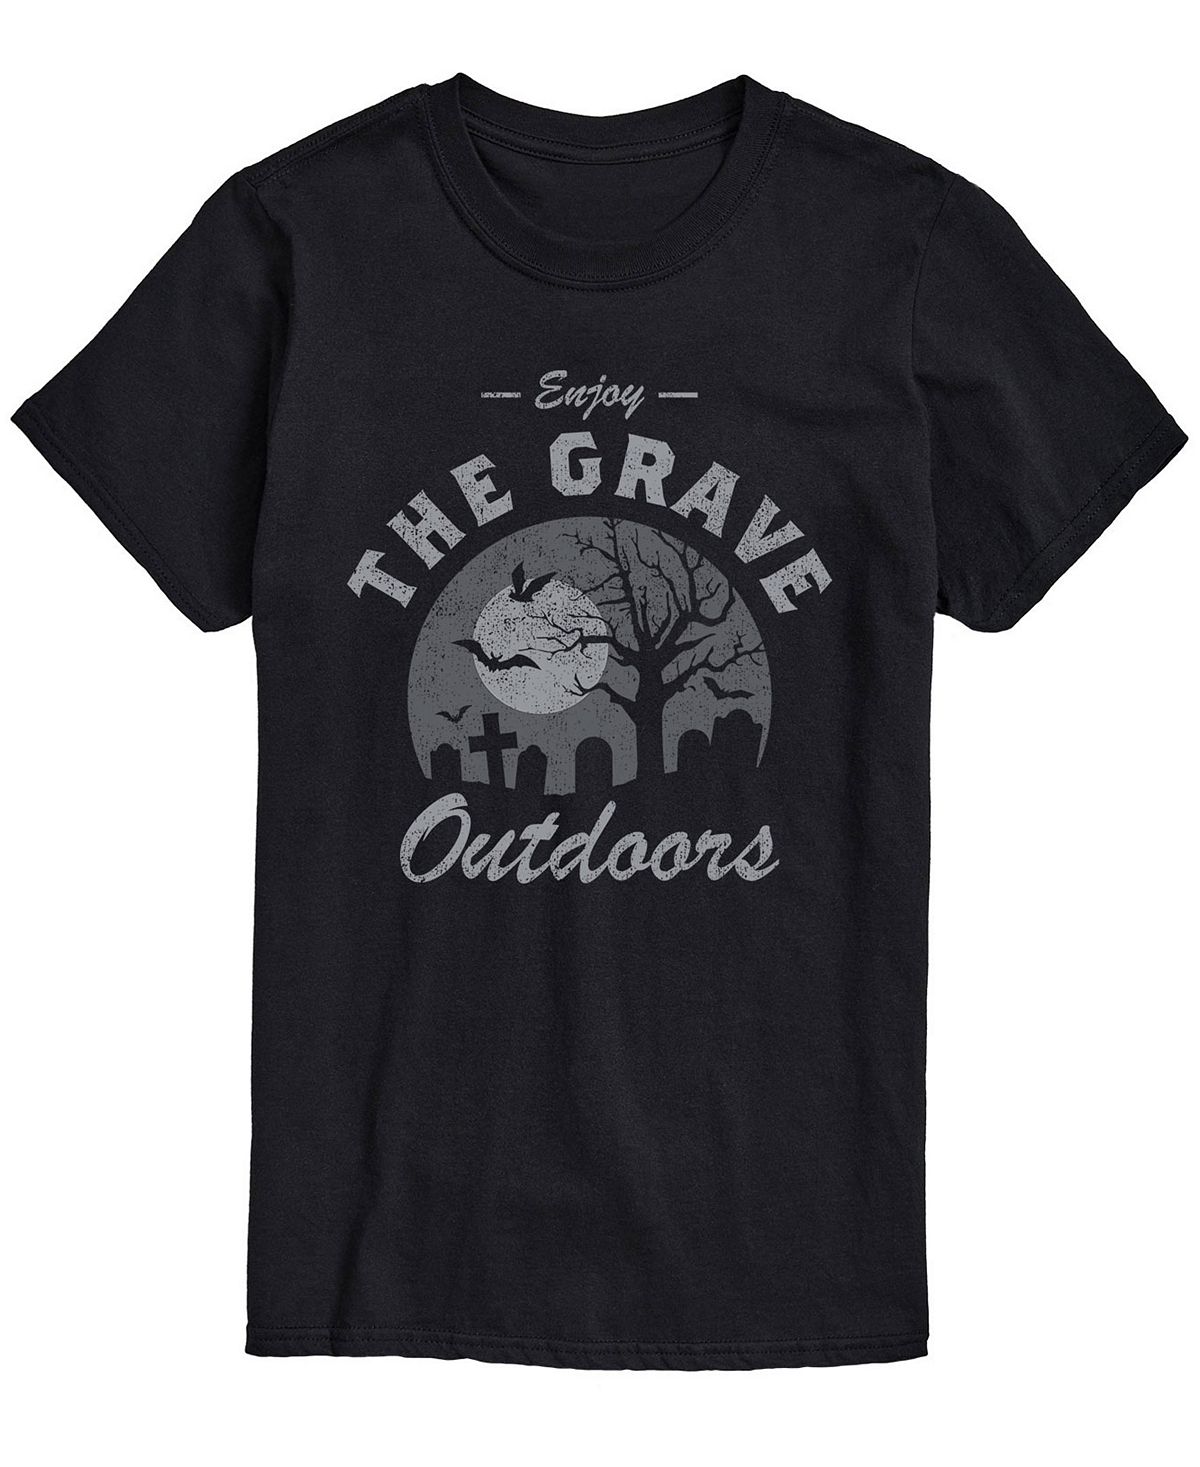 цена Мужская футболка классического кроя grave outdoors AIRWAVES, черный